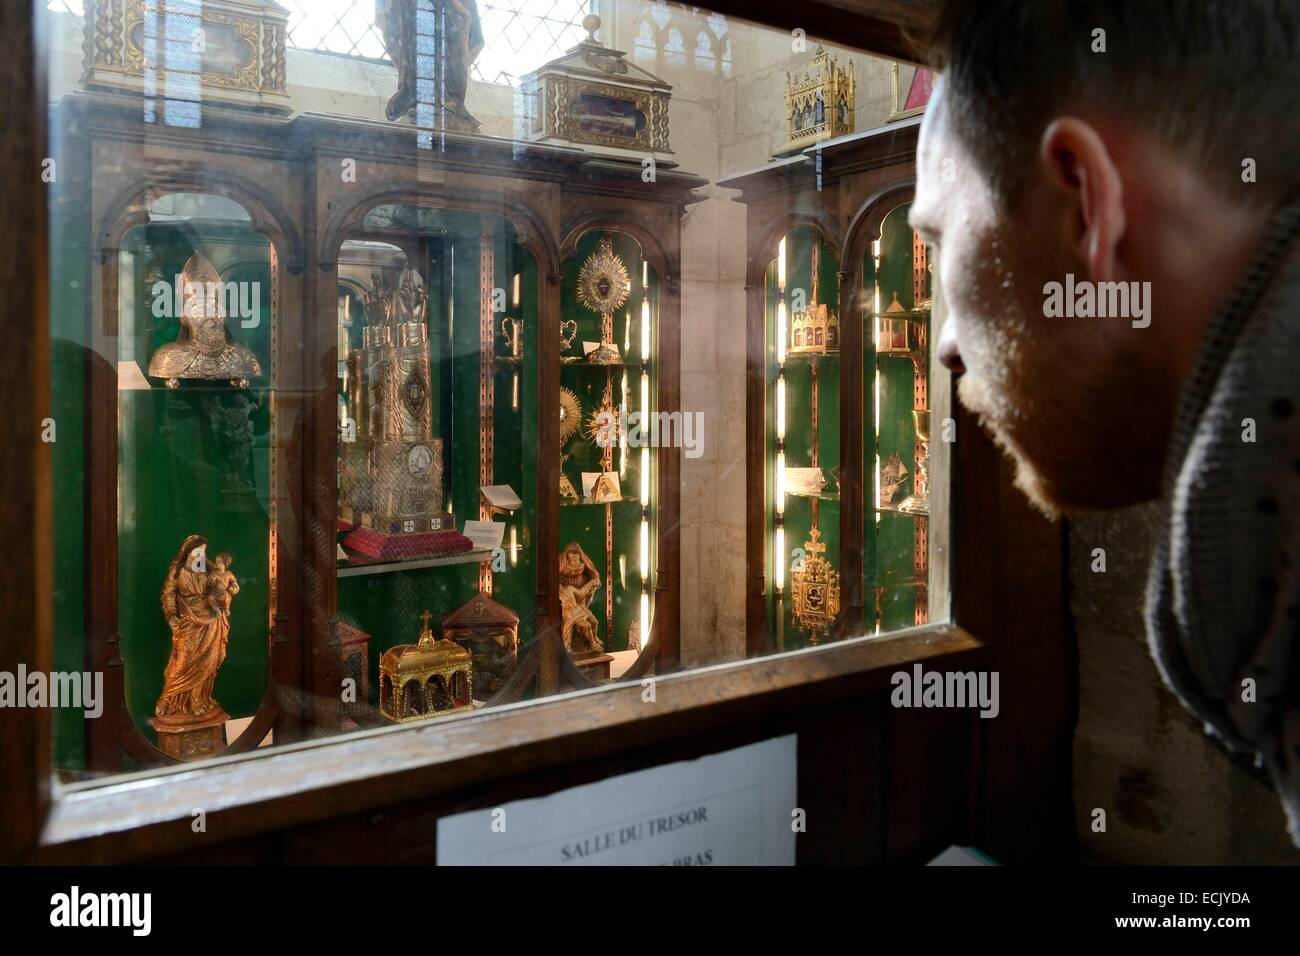 Frankreich, Meurthe et Moselle, Basilika Saint Nicolas de Port, Schatz Zimmer, die Reliquie des Saint Nicolas Segen dexter (nach der Tradition ist es die Knochen eines Gelenks der rechten Hand des Bischofs), bleibt in einem Reliquiar Arm des späten 19. Jahrhunderts Stockfoto